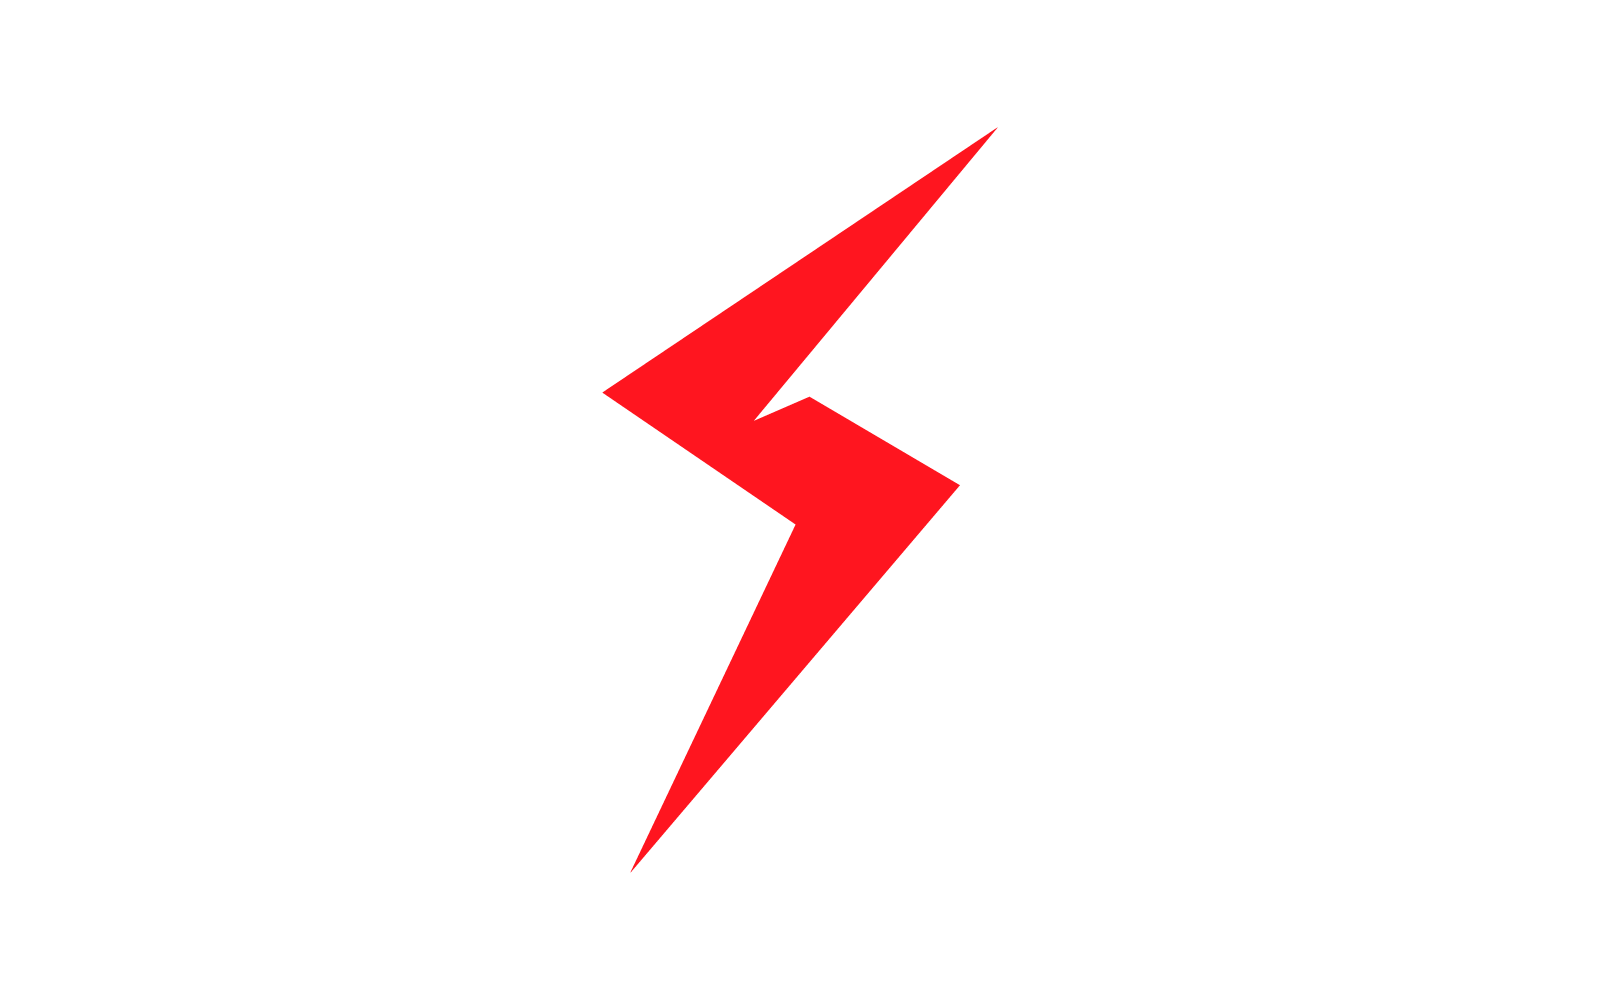 Power lightning logo vector design #294427 - TemplateMonster